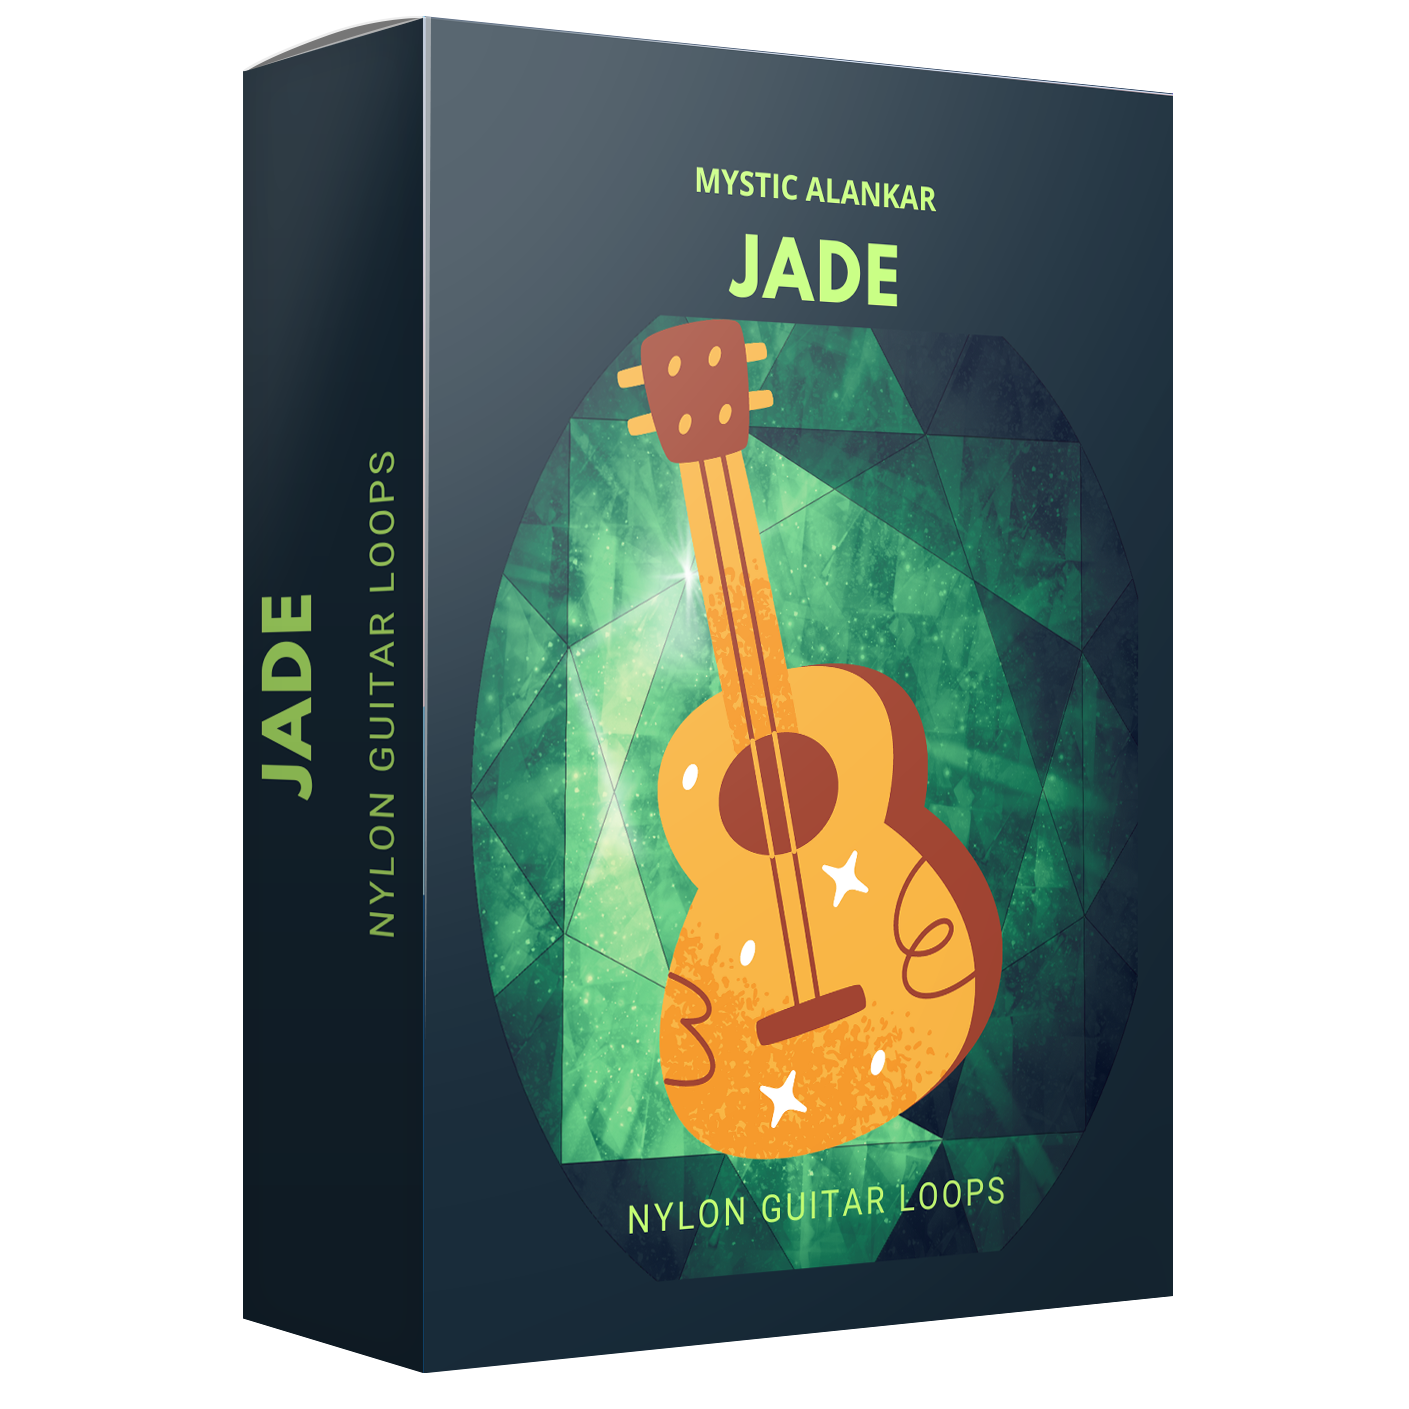 Jade - Nylon Guitar Loops